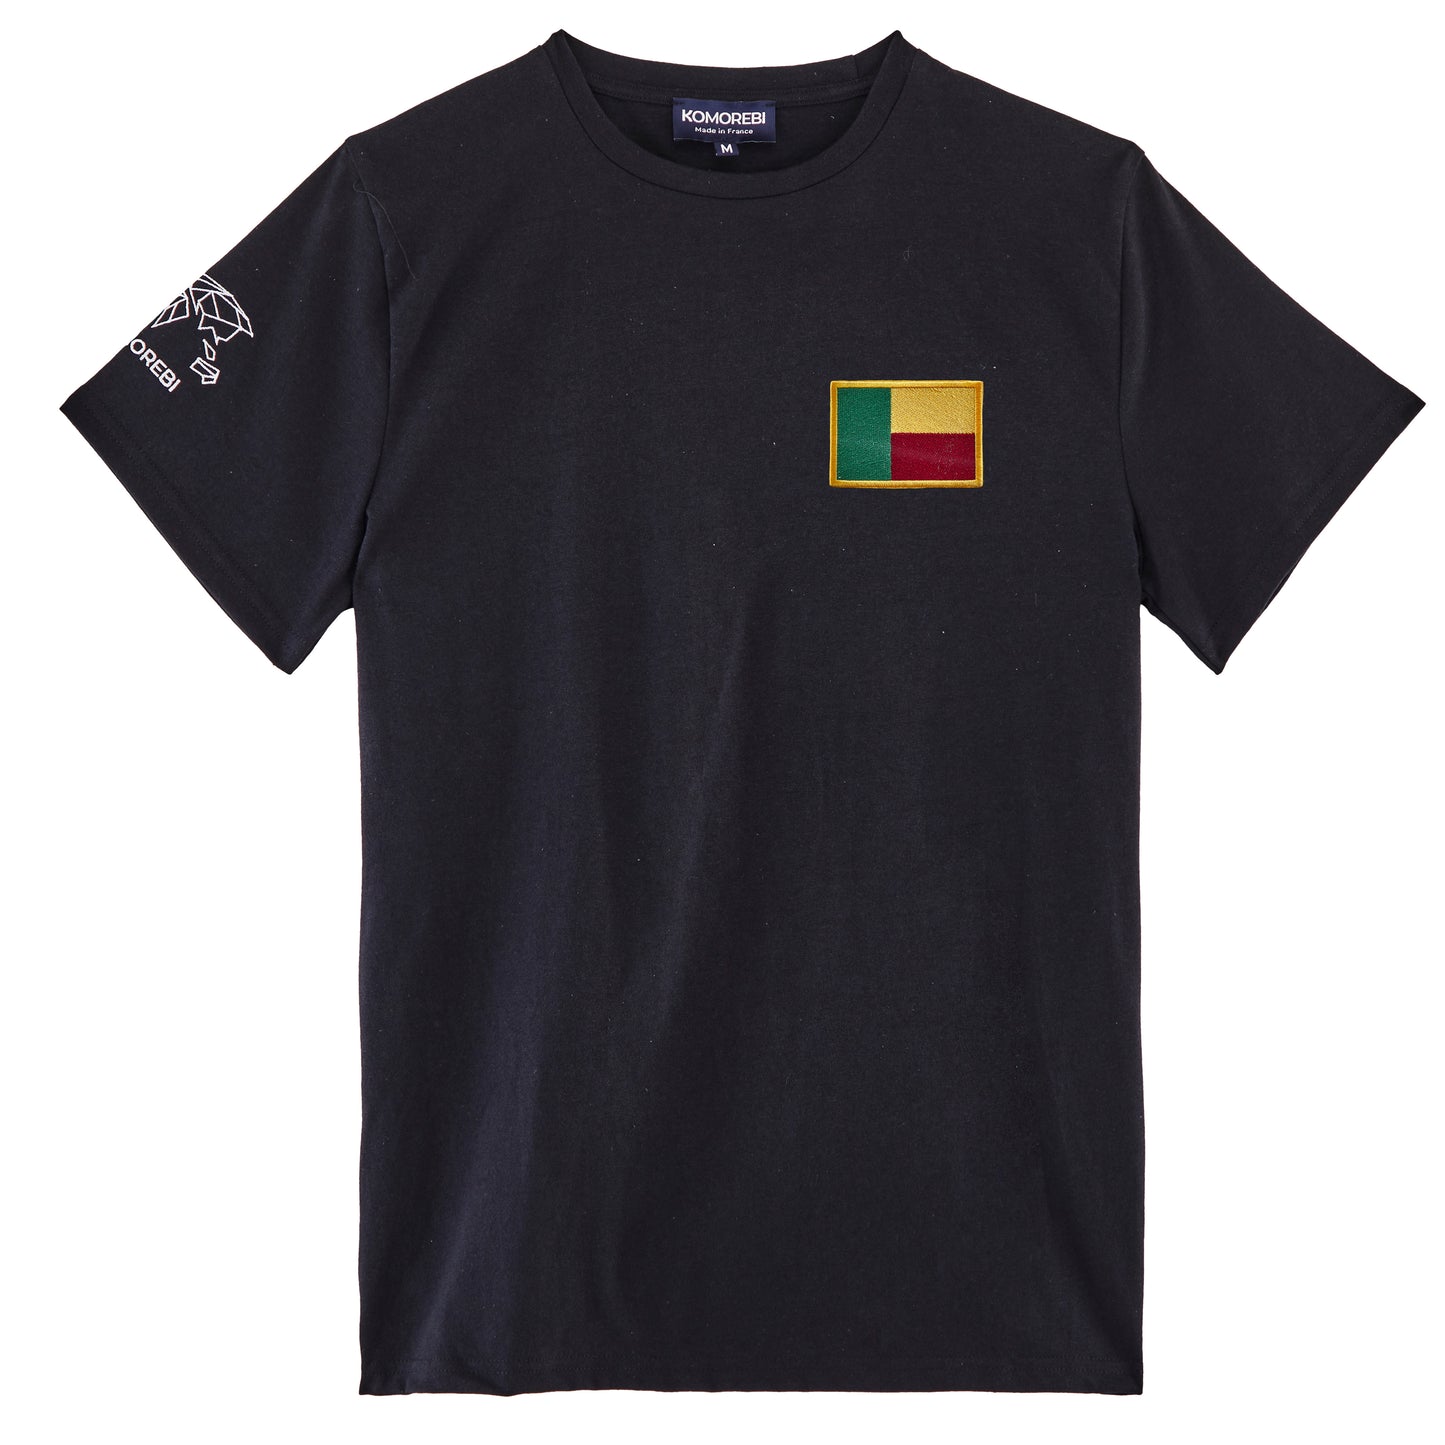 Benin - flag t-shirt